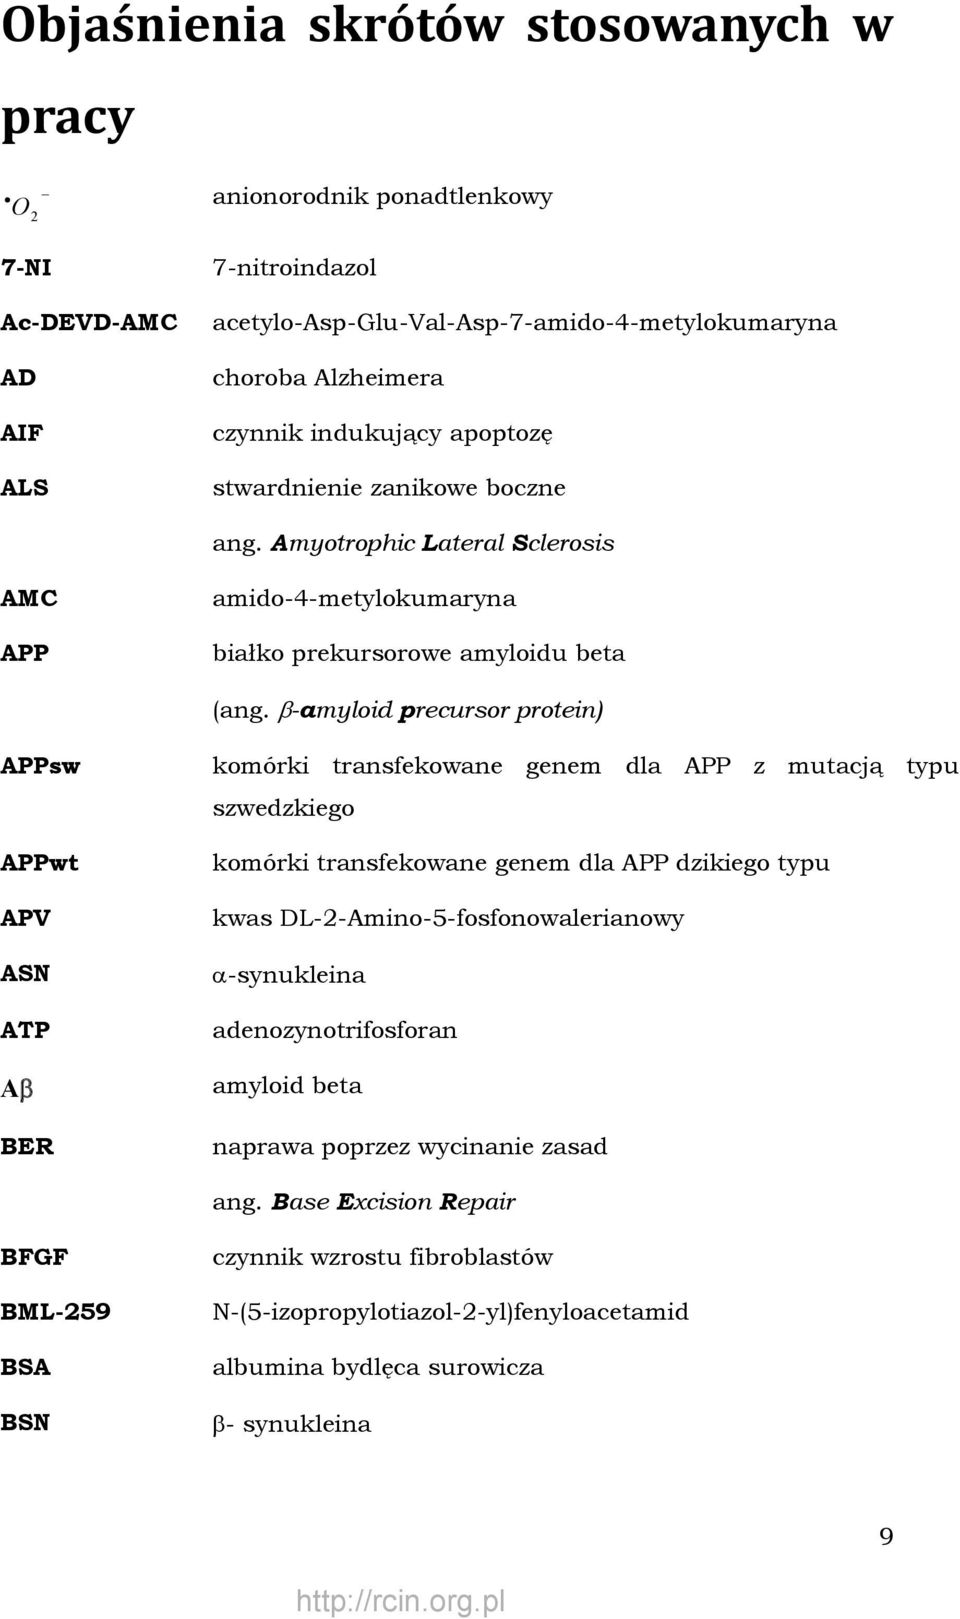 β-amyloid precursor protein) APPsw APPwt APV ASN ATP Aβ BER komórki transfekowane genem dla APP z mutacją typu szwedzkiego komórki transfekowane genem dla APP dzikiego typu kwas